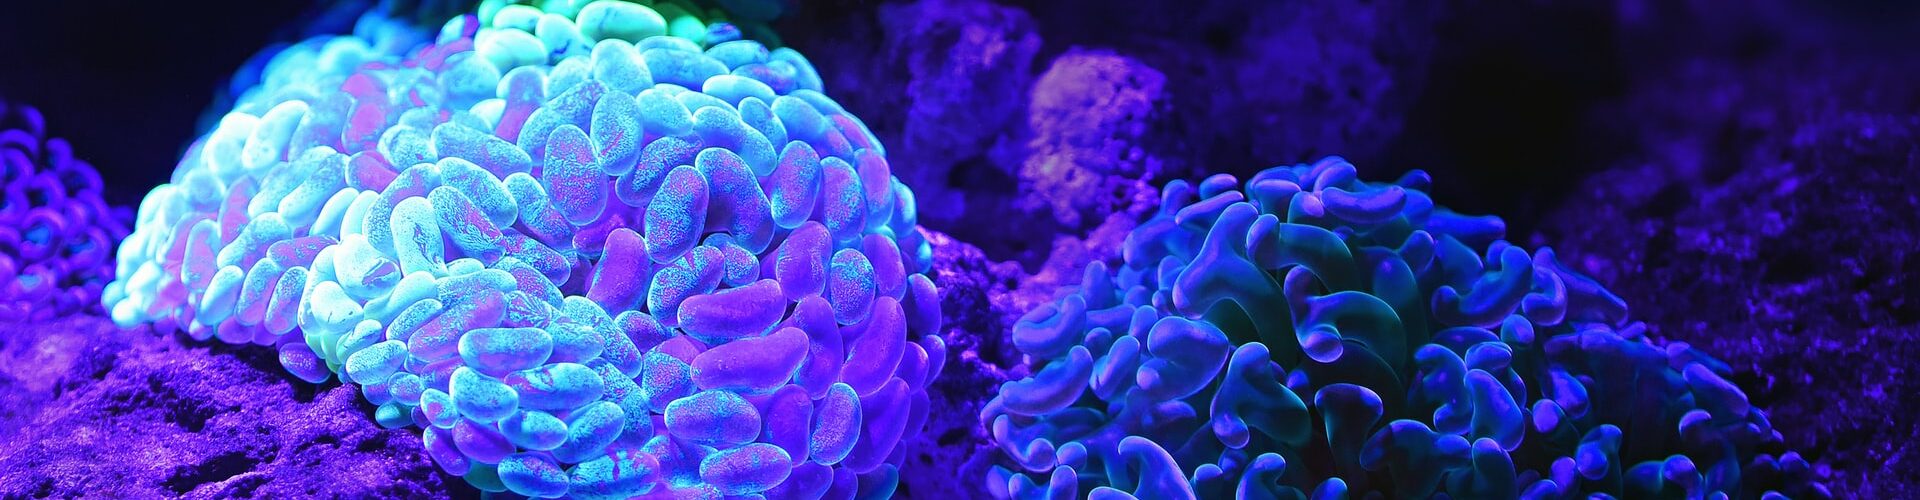 imagem destacada - corais que parecem cérebro